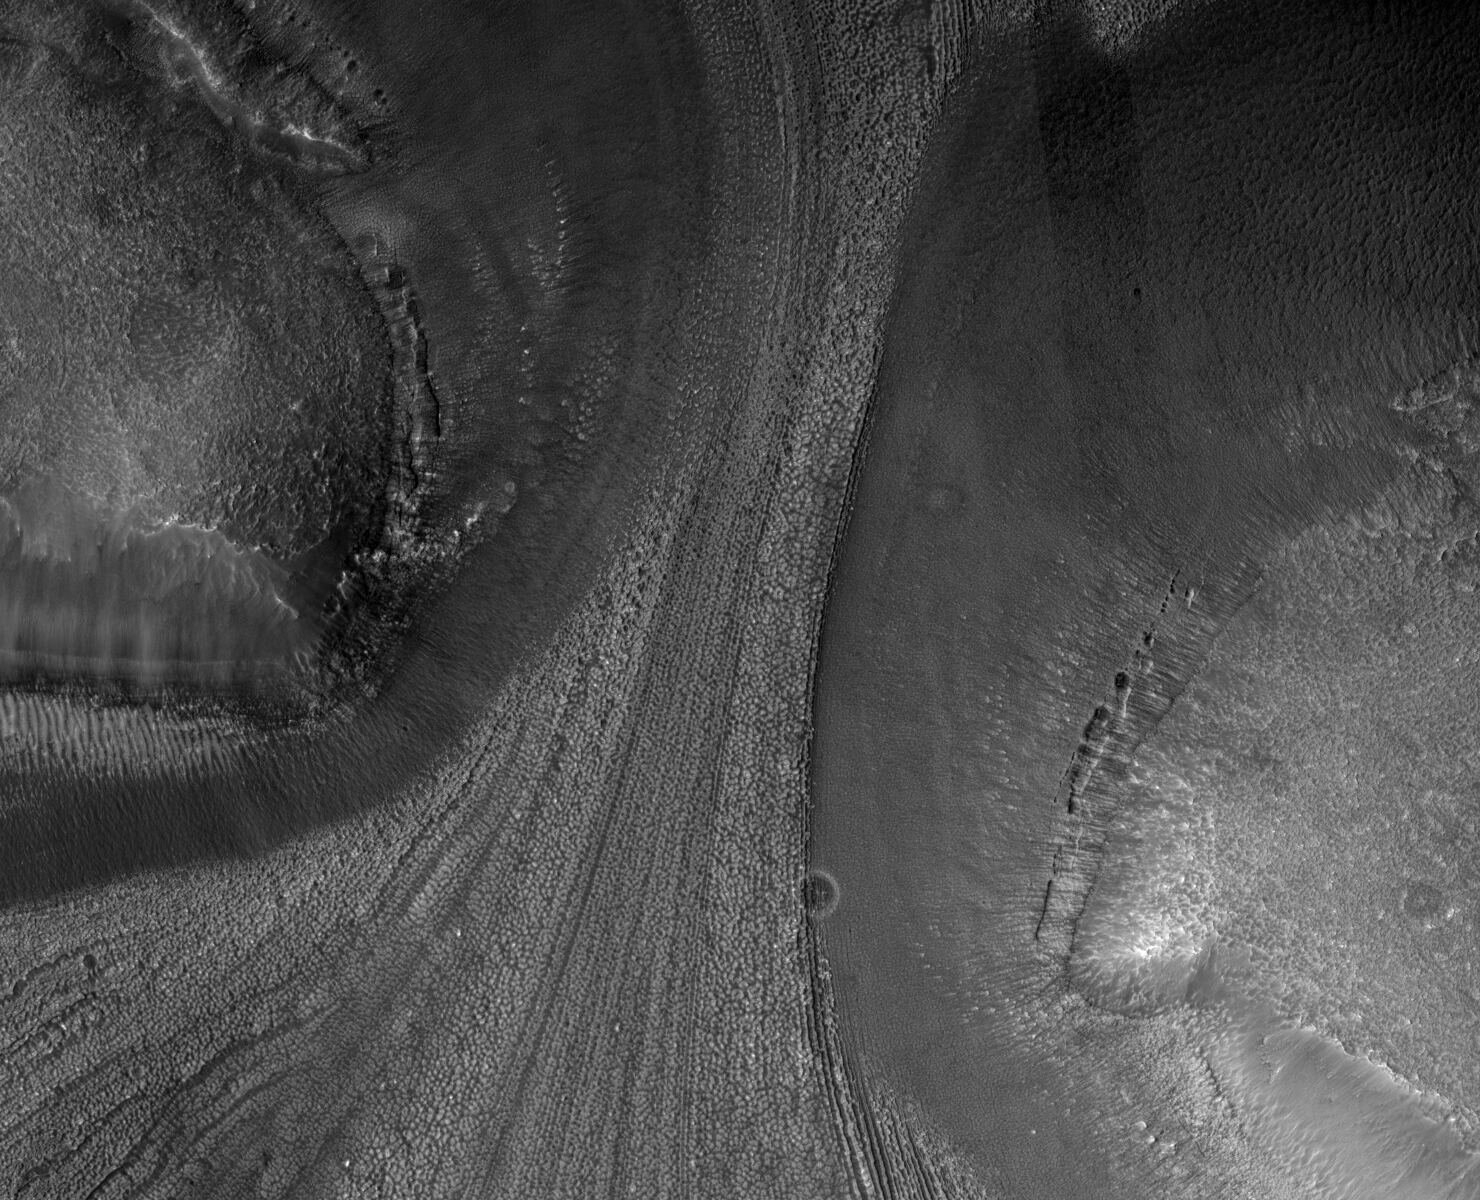 由火星上冰川運動所產生的地形放大圖，可以看見U型谷與冰川作用所形成的平行線形冰川擦痕、沉積物等，與地球上因冰川作用產生的特殊地形相同。圖照來源：Phys.org。 